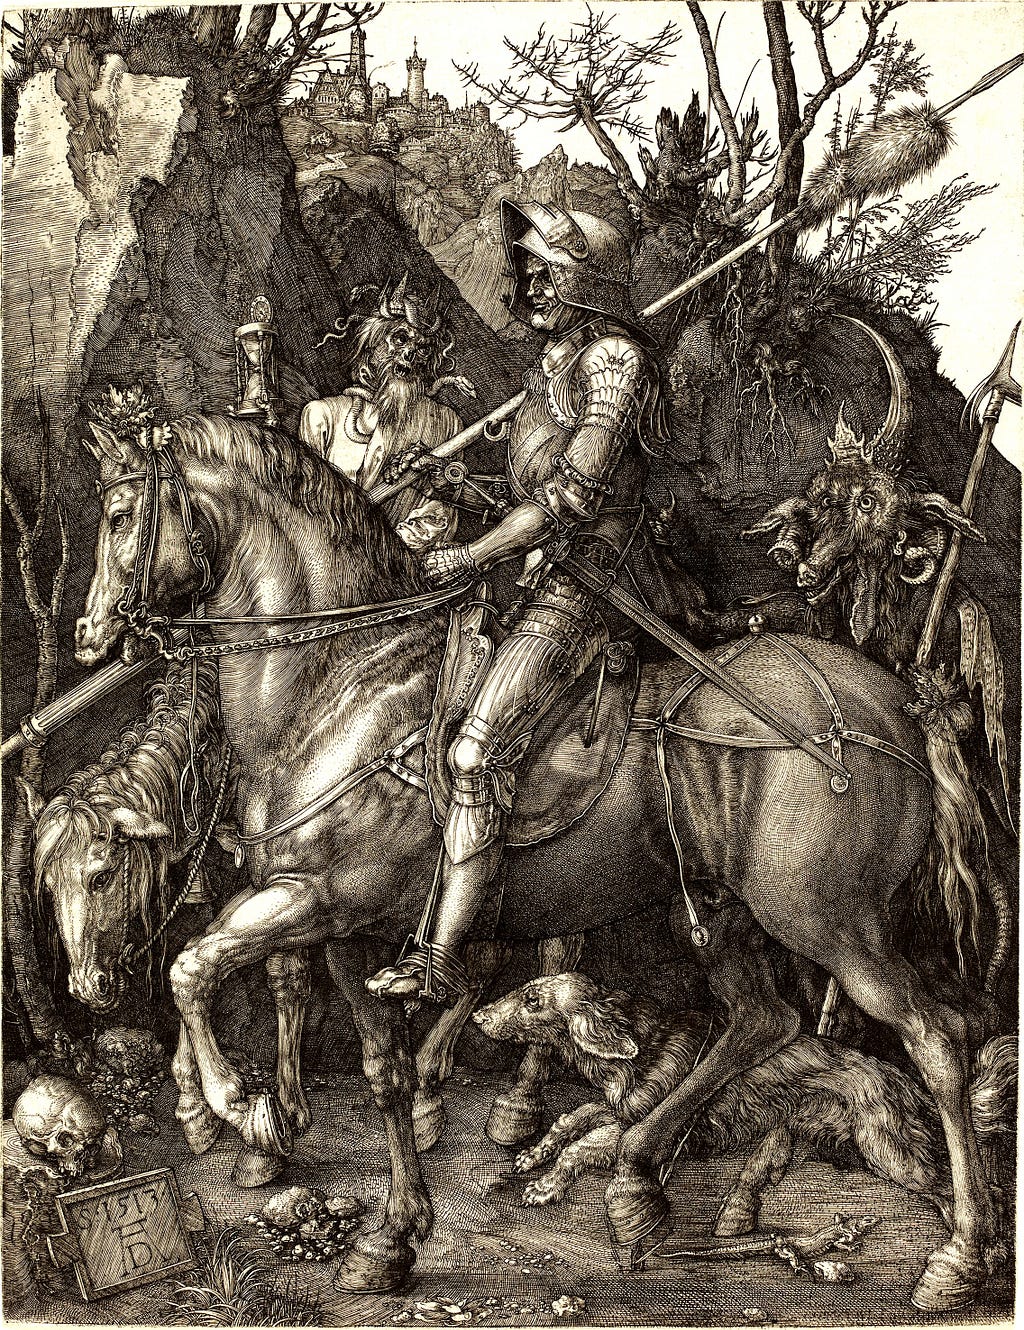 Albrecht Dürer, Knight, Death, and the Devil, 1513